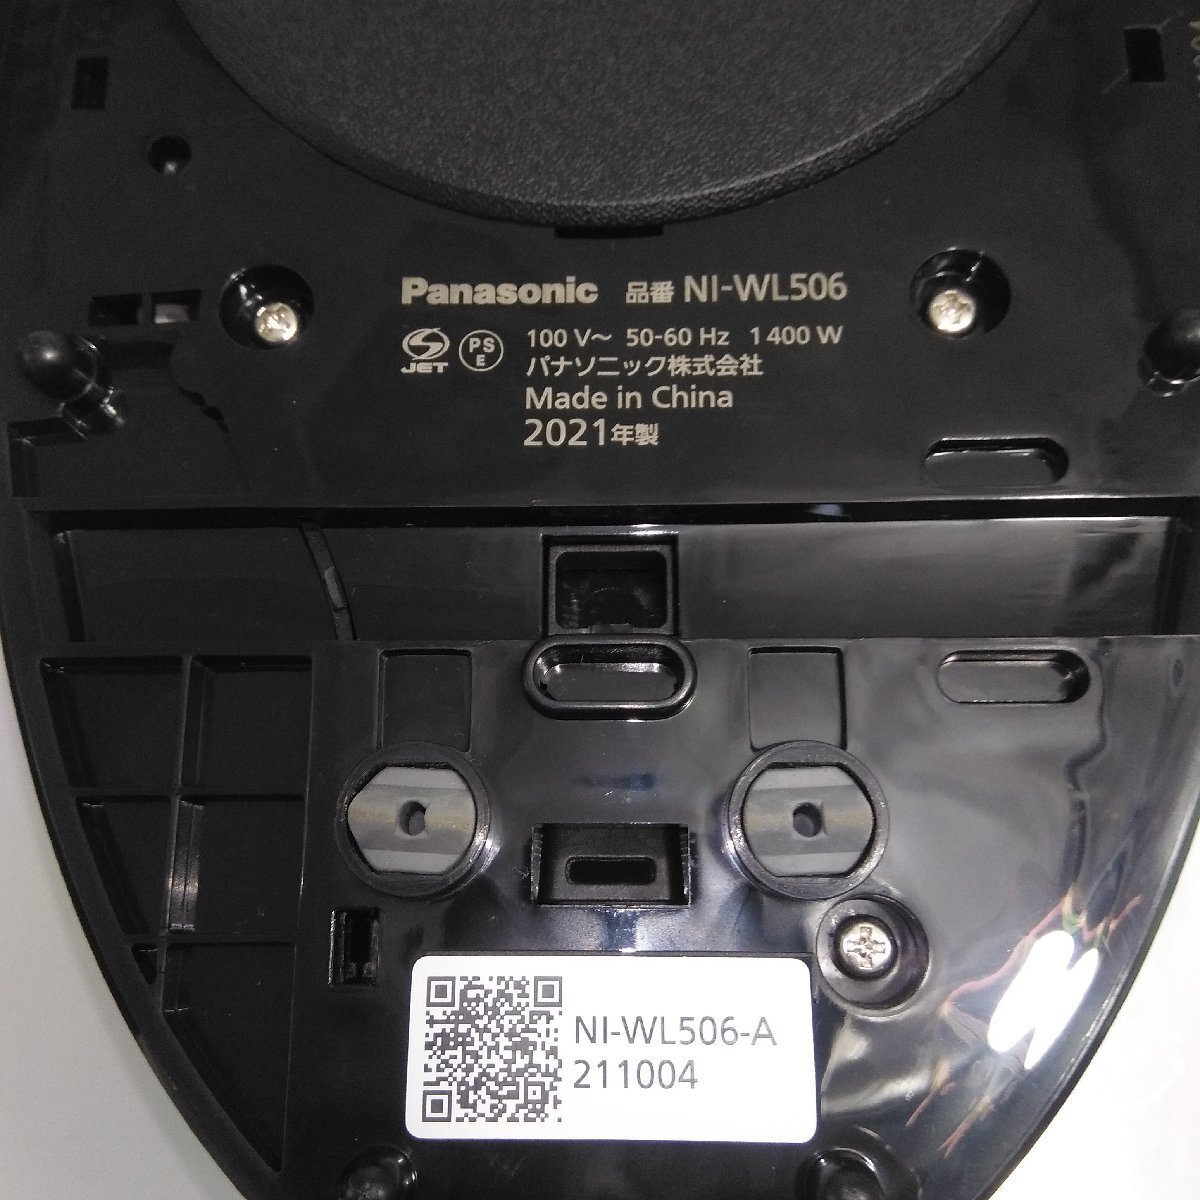 5131 [ рабочий товар ]Panasonic Panasonic CaRuRu NI-WL506 беспроводной паровой утюг 2021 год производства чёрный цвет 